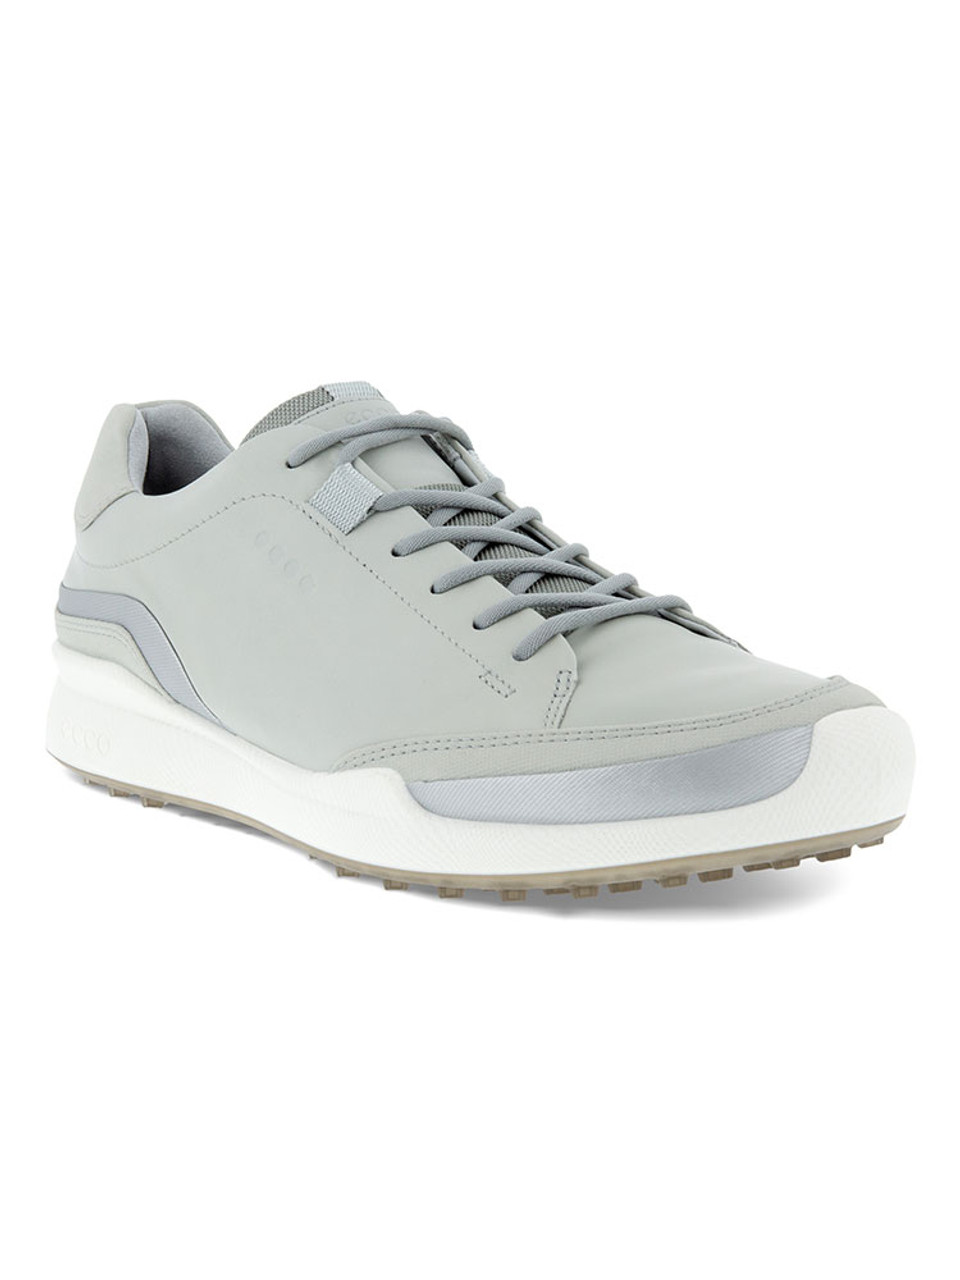 Ecco BIOM Golf Shoes - Silver/Grey - Mens | GolfBox